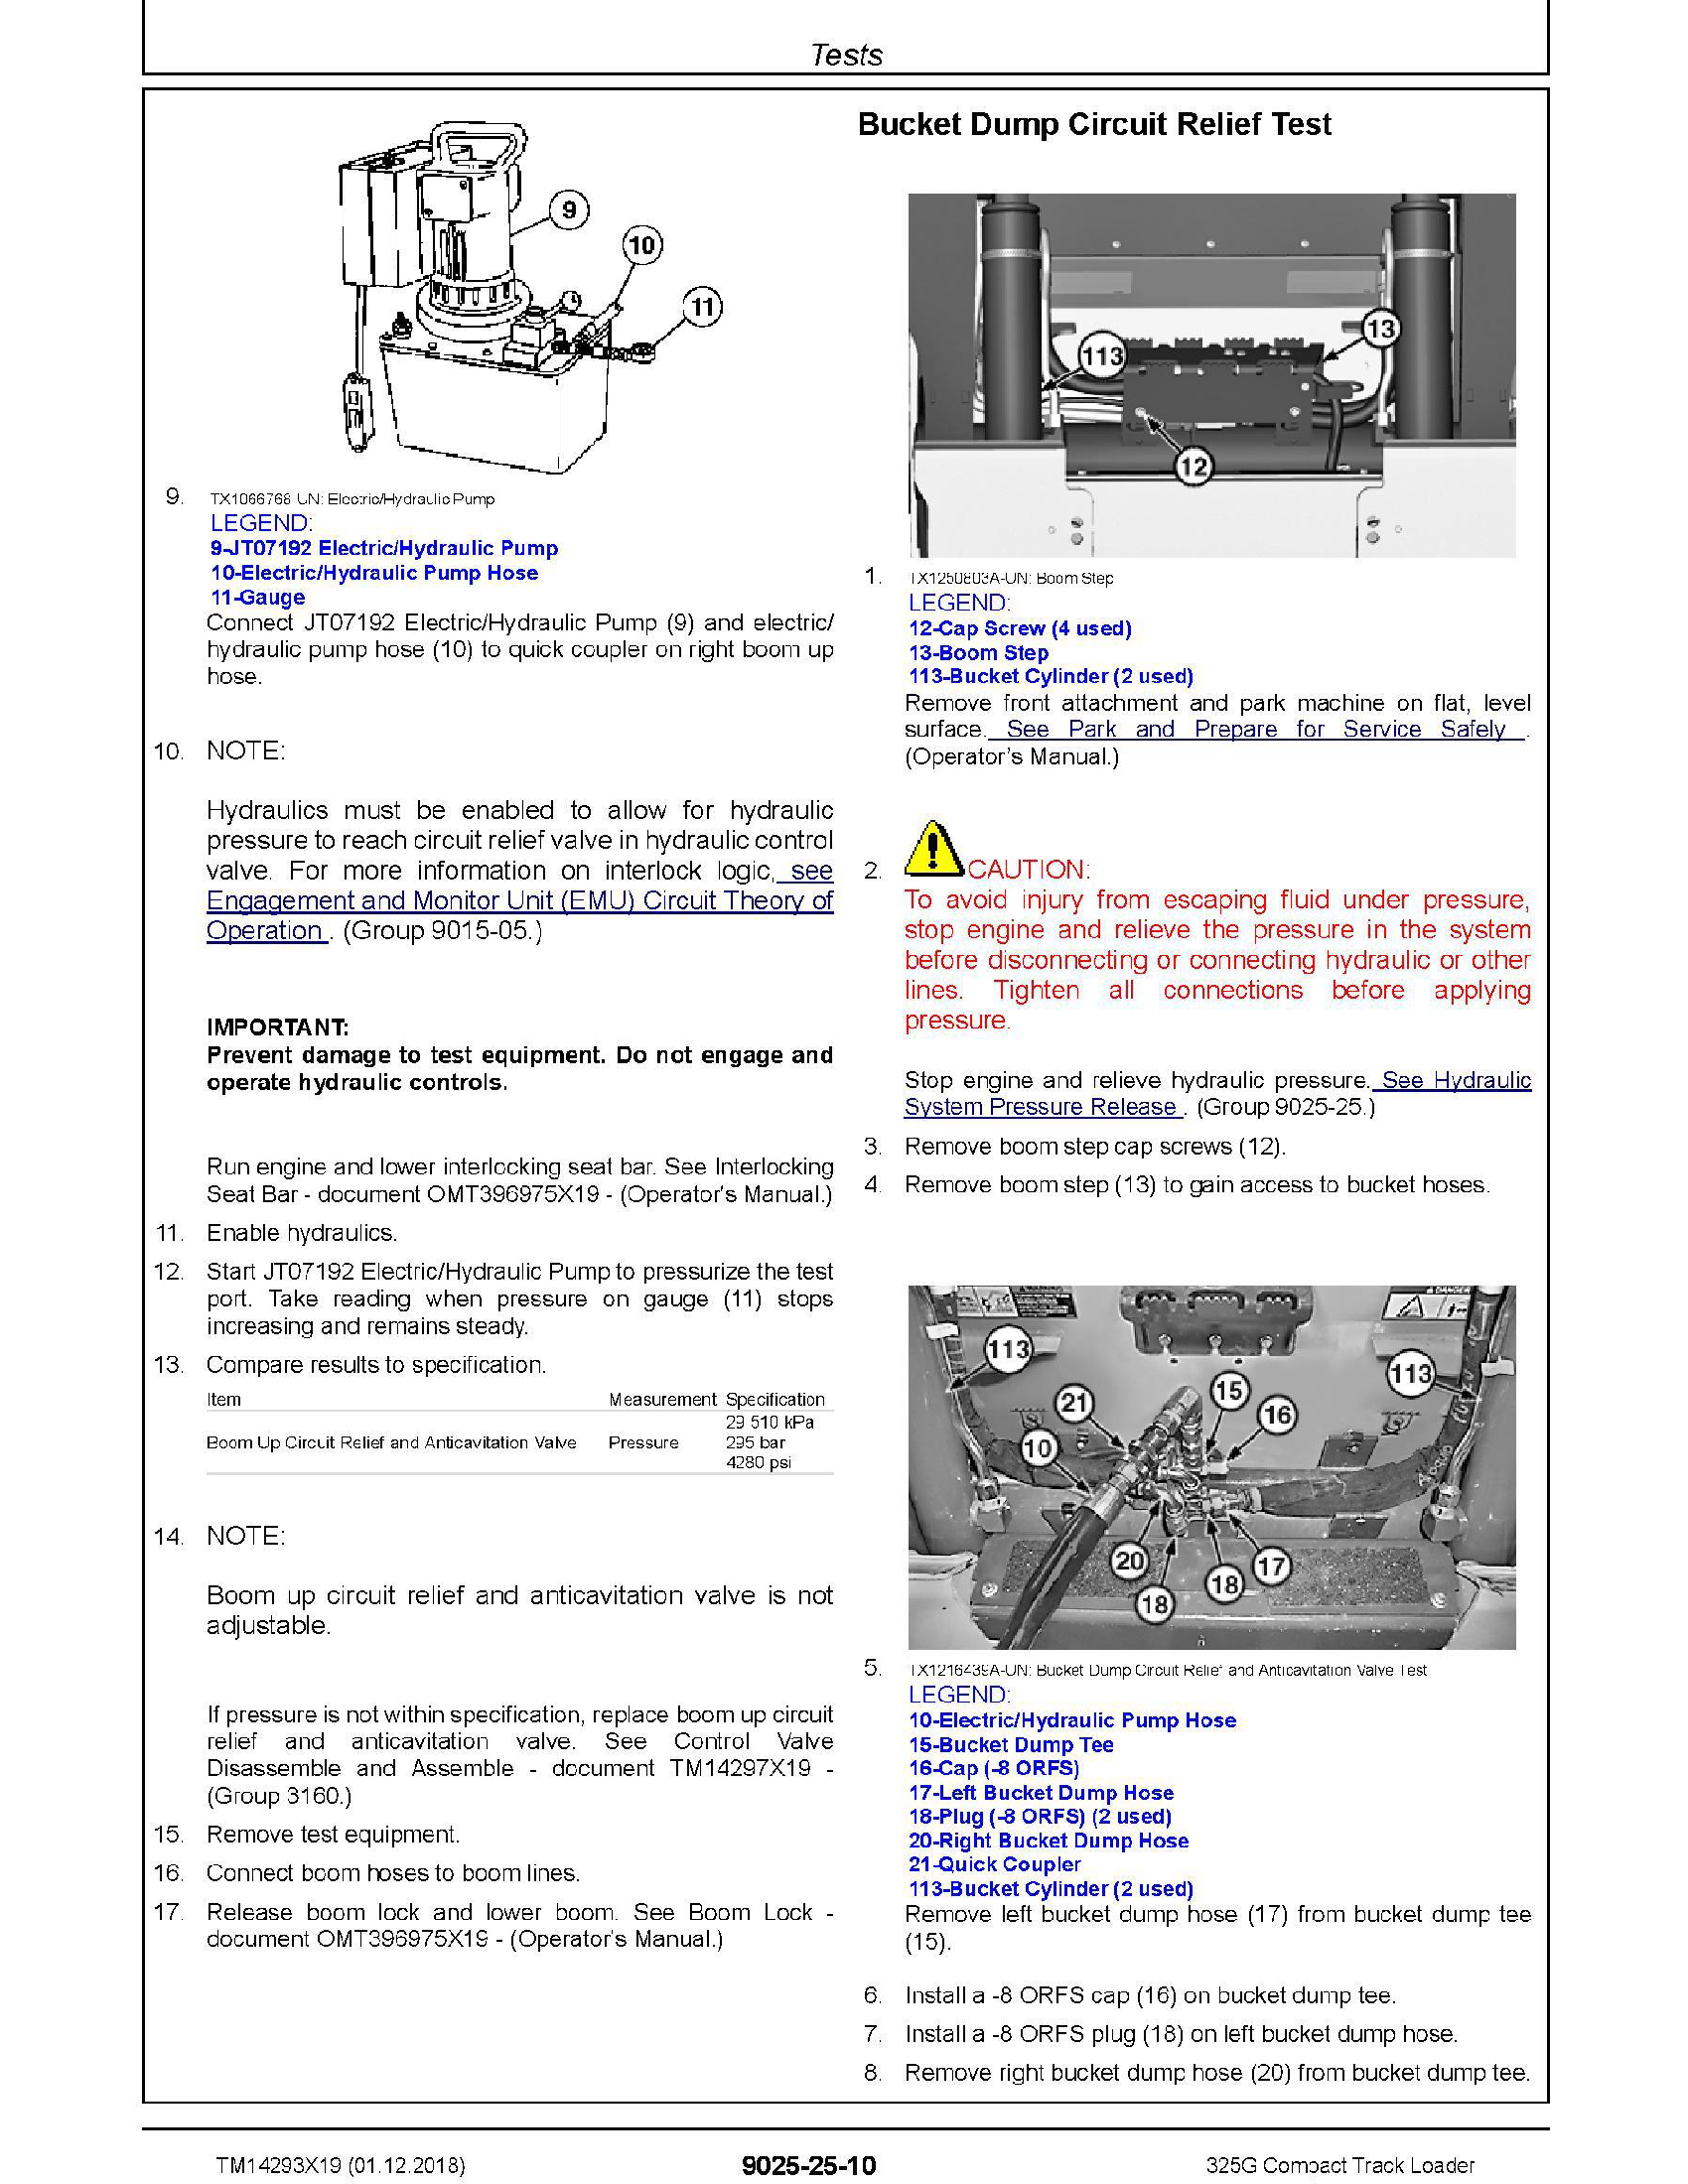 John Deere _G328658 manual pdf